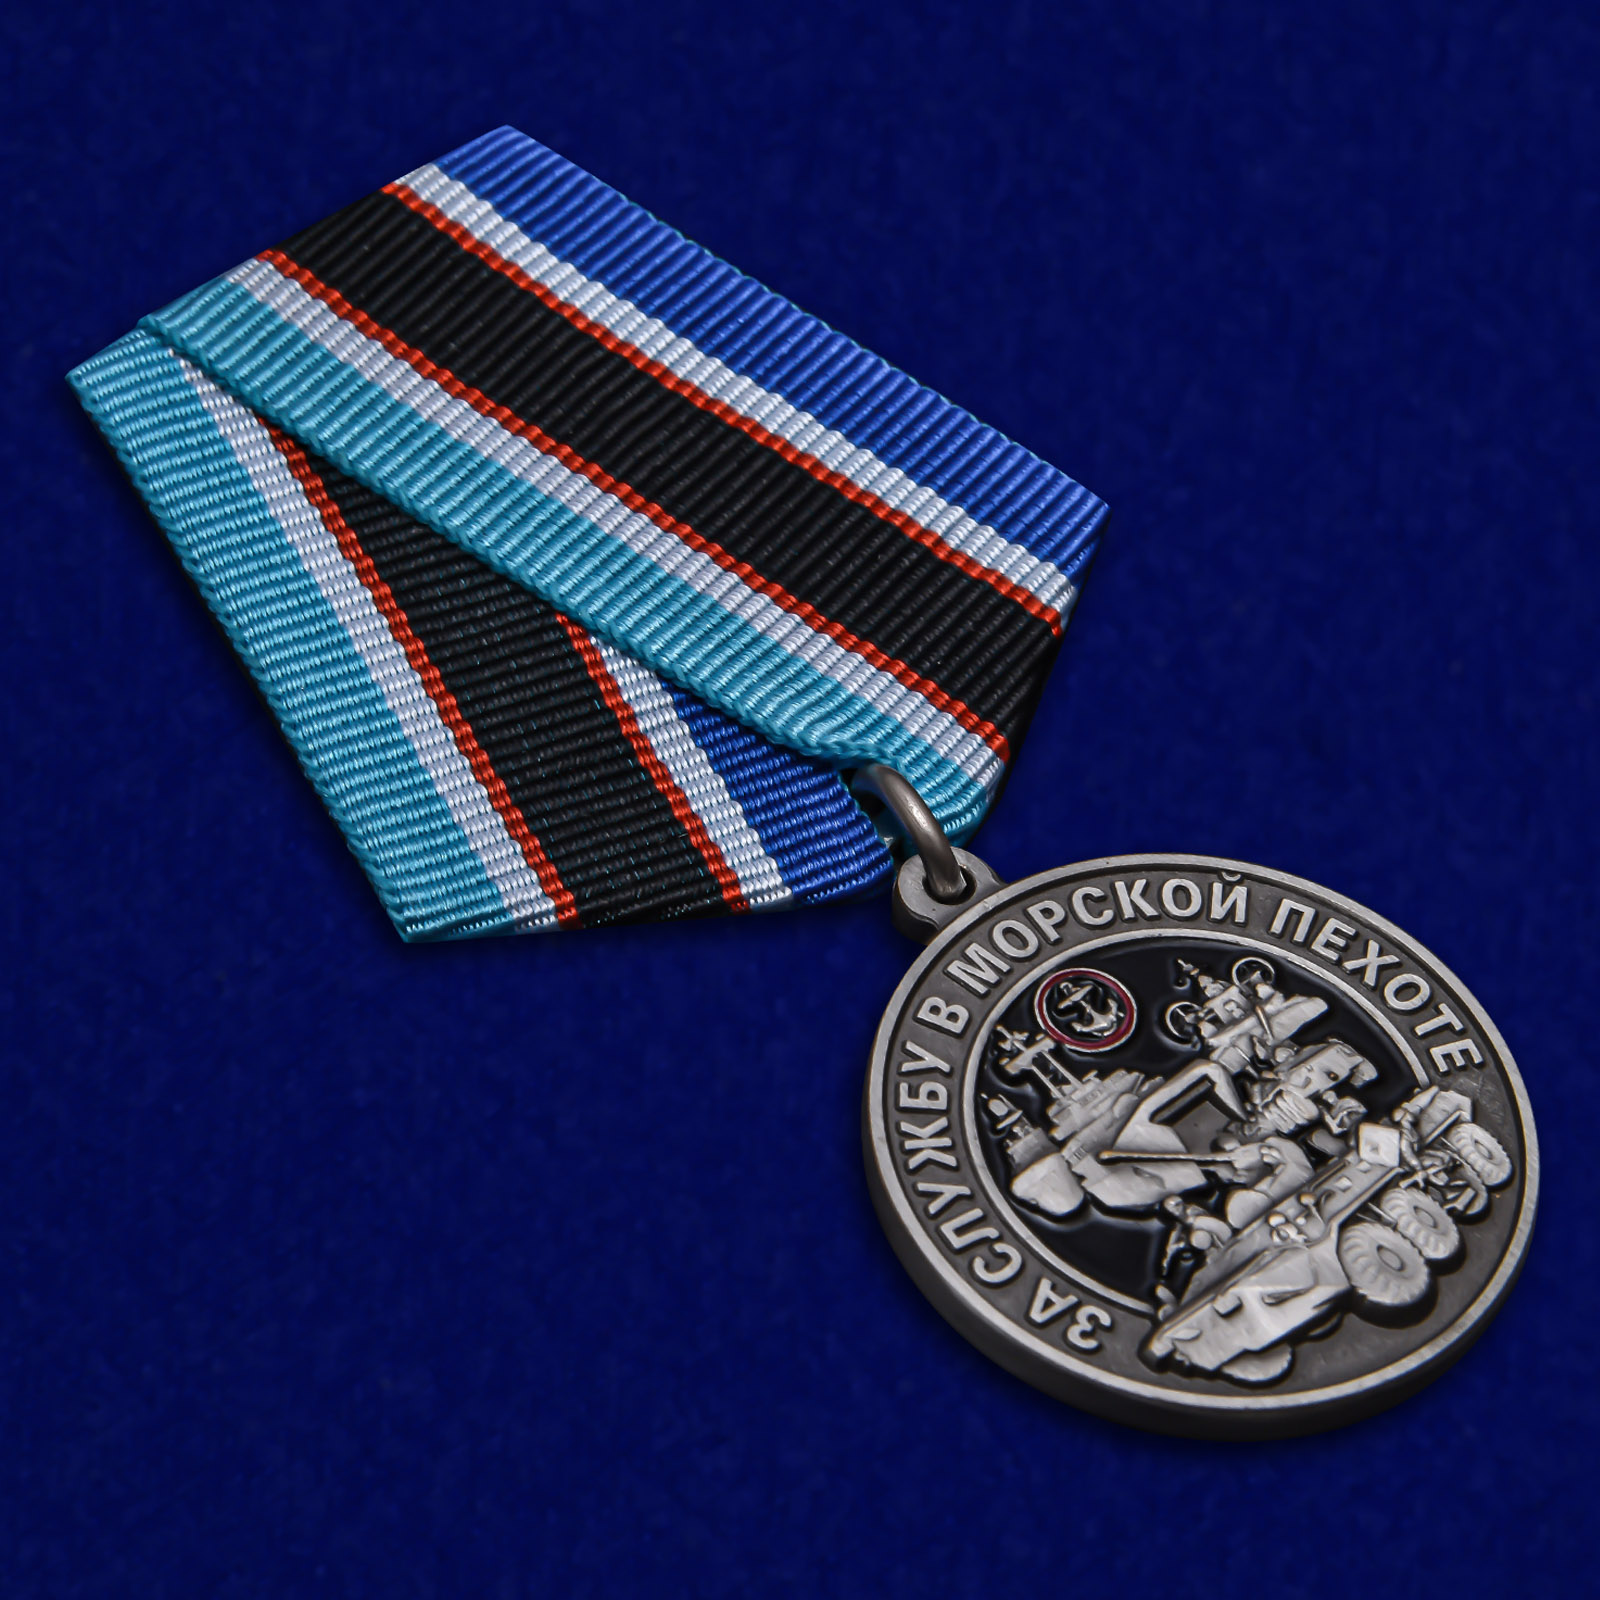 Купить медаль "За службу в Морской пехоте"